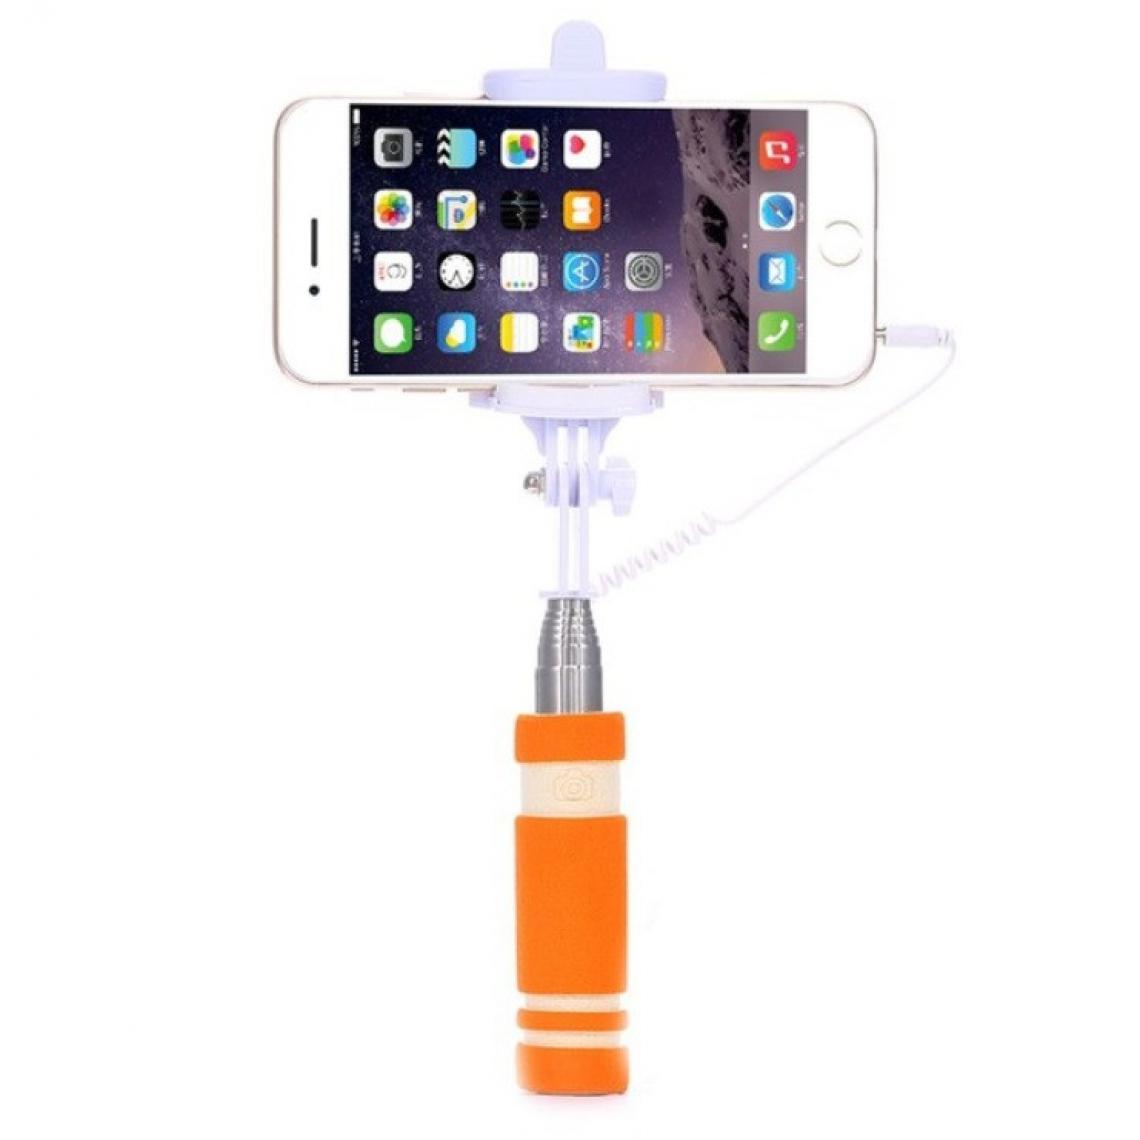 Shot - Mini Perche Selfie pour SAMSUNG Galaxy S10e Smartphone avec Cable Jack Selfie Stick Android IOS Reglable Bouton Photo (ORANGE) - Autres accessoires smartphone